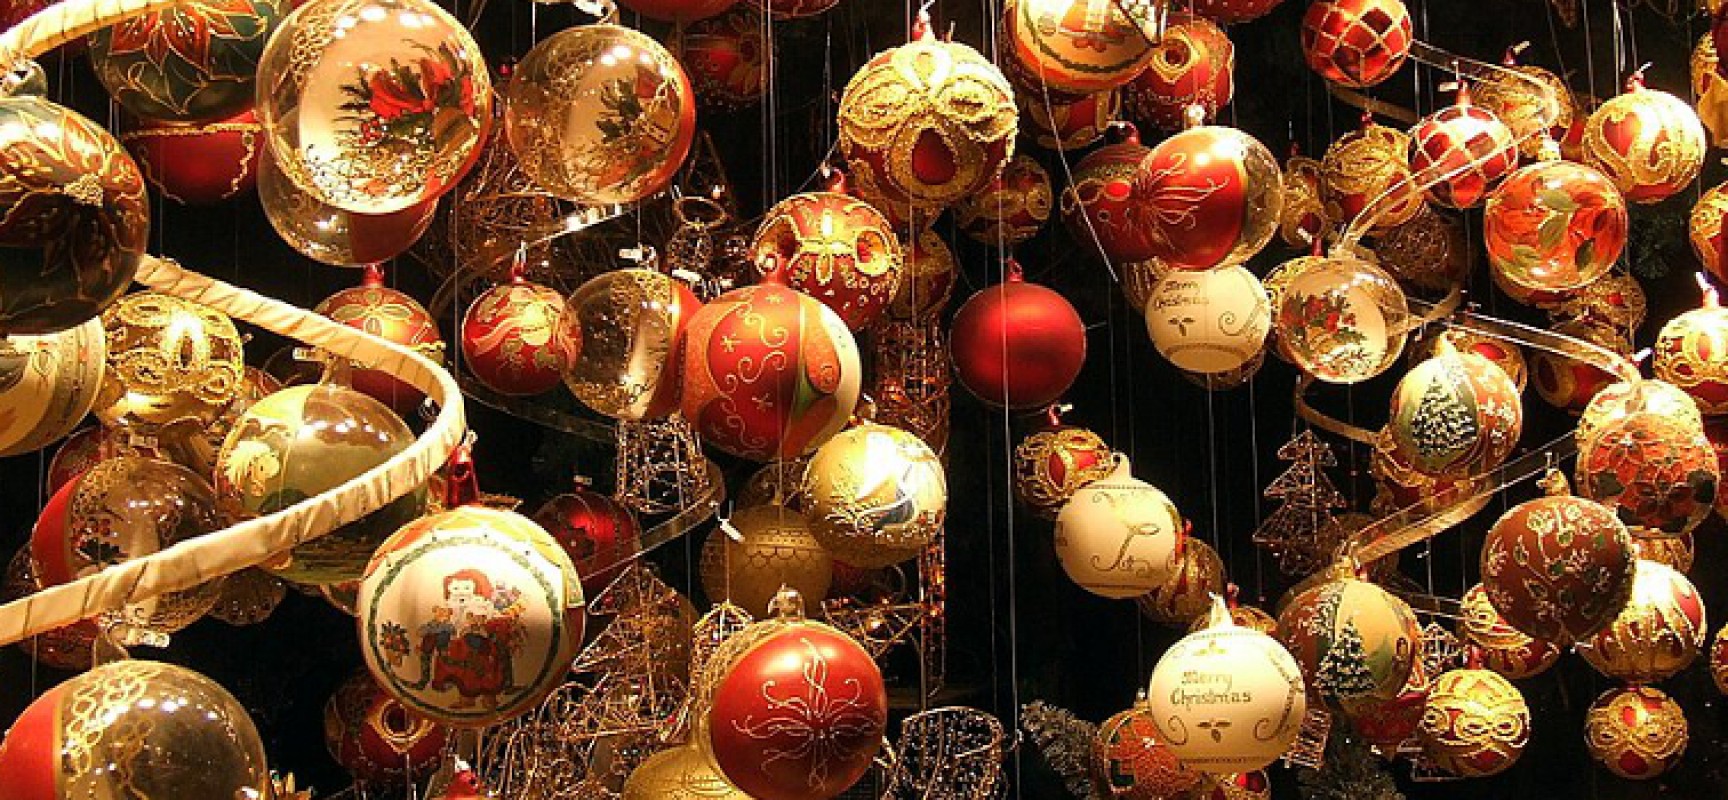 “pARTEcipiamo al Natale”, mostra collettiva di artisti locali dall’8 al 23 dicembre